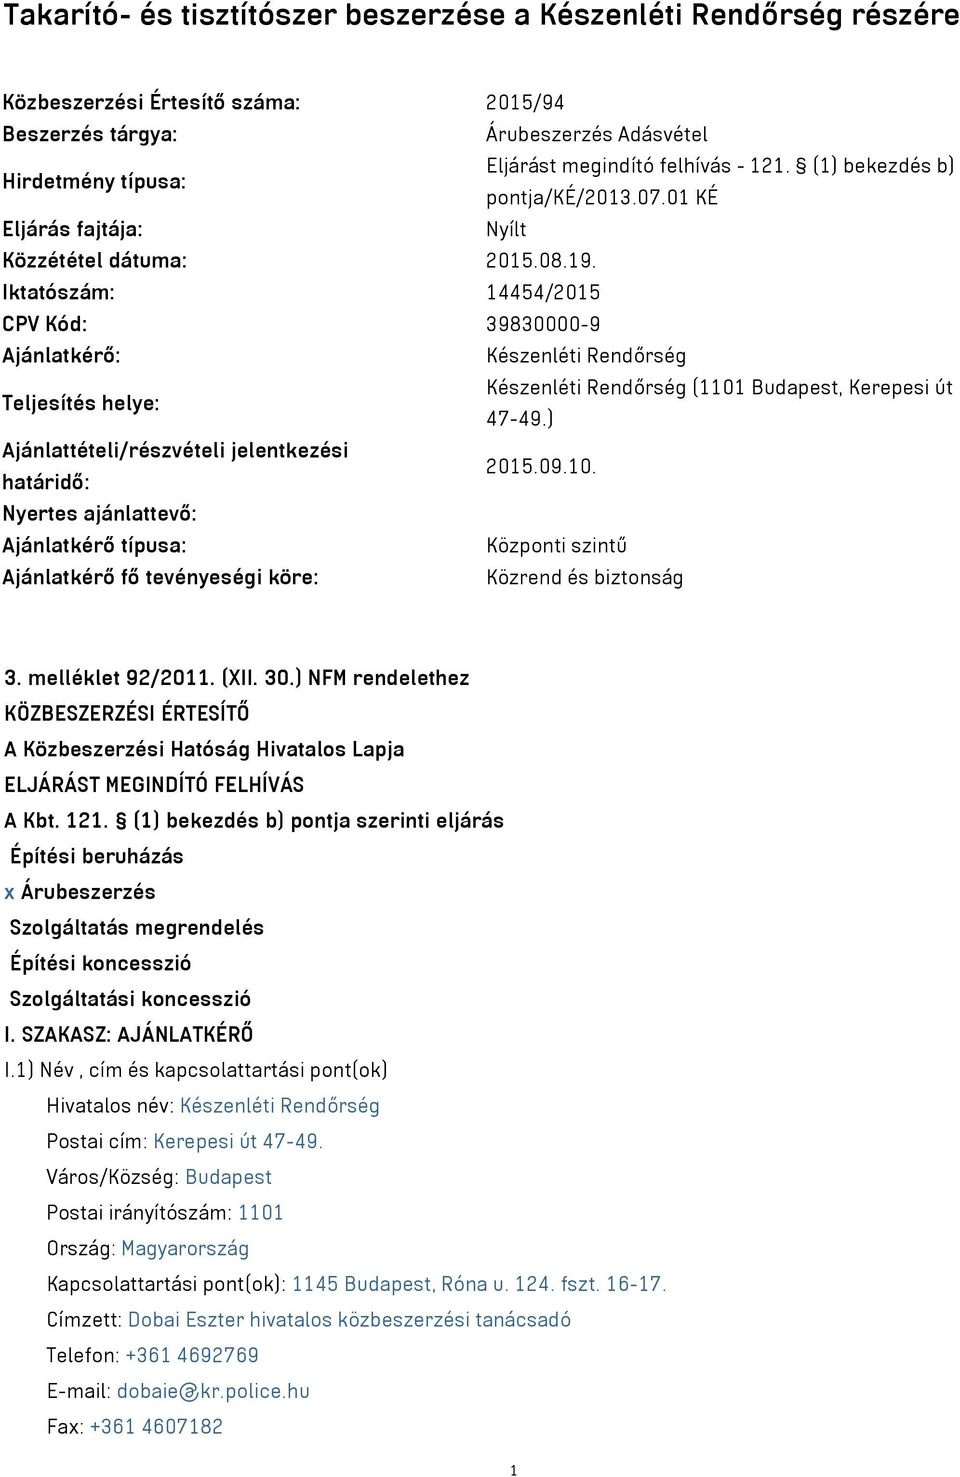 Iktatószám: 14454/2015 CPV Kód: 39830000-9 Ajánlatkérő: Készenléti Rendőrség Teljesítés helye: Készenléti Rendőrség (1101 Budapest, Kerepesi út 47-49.